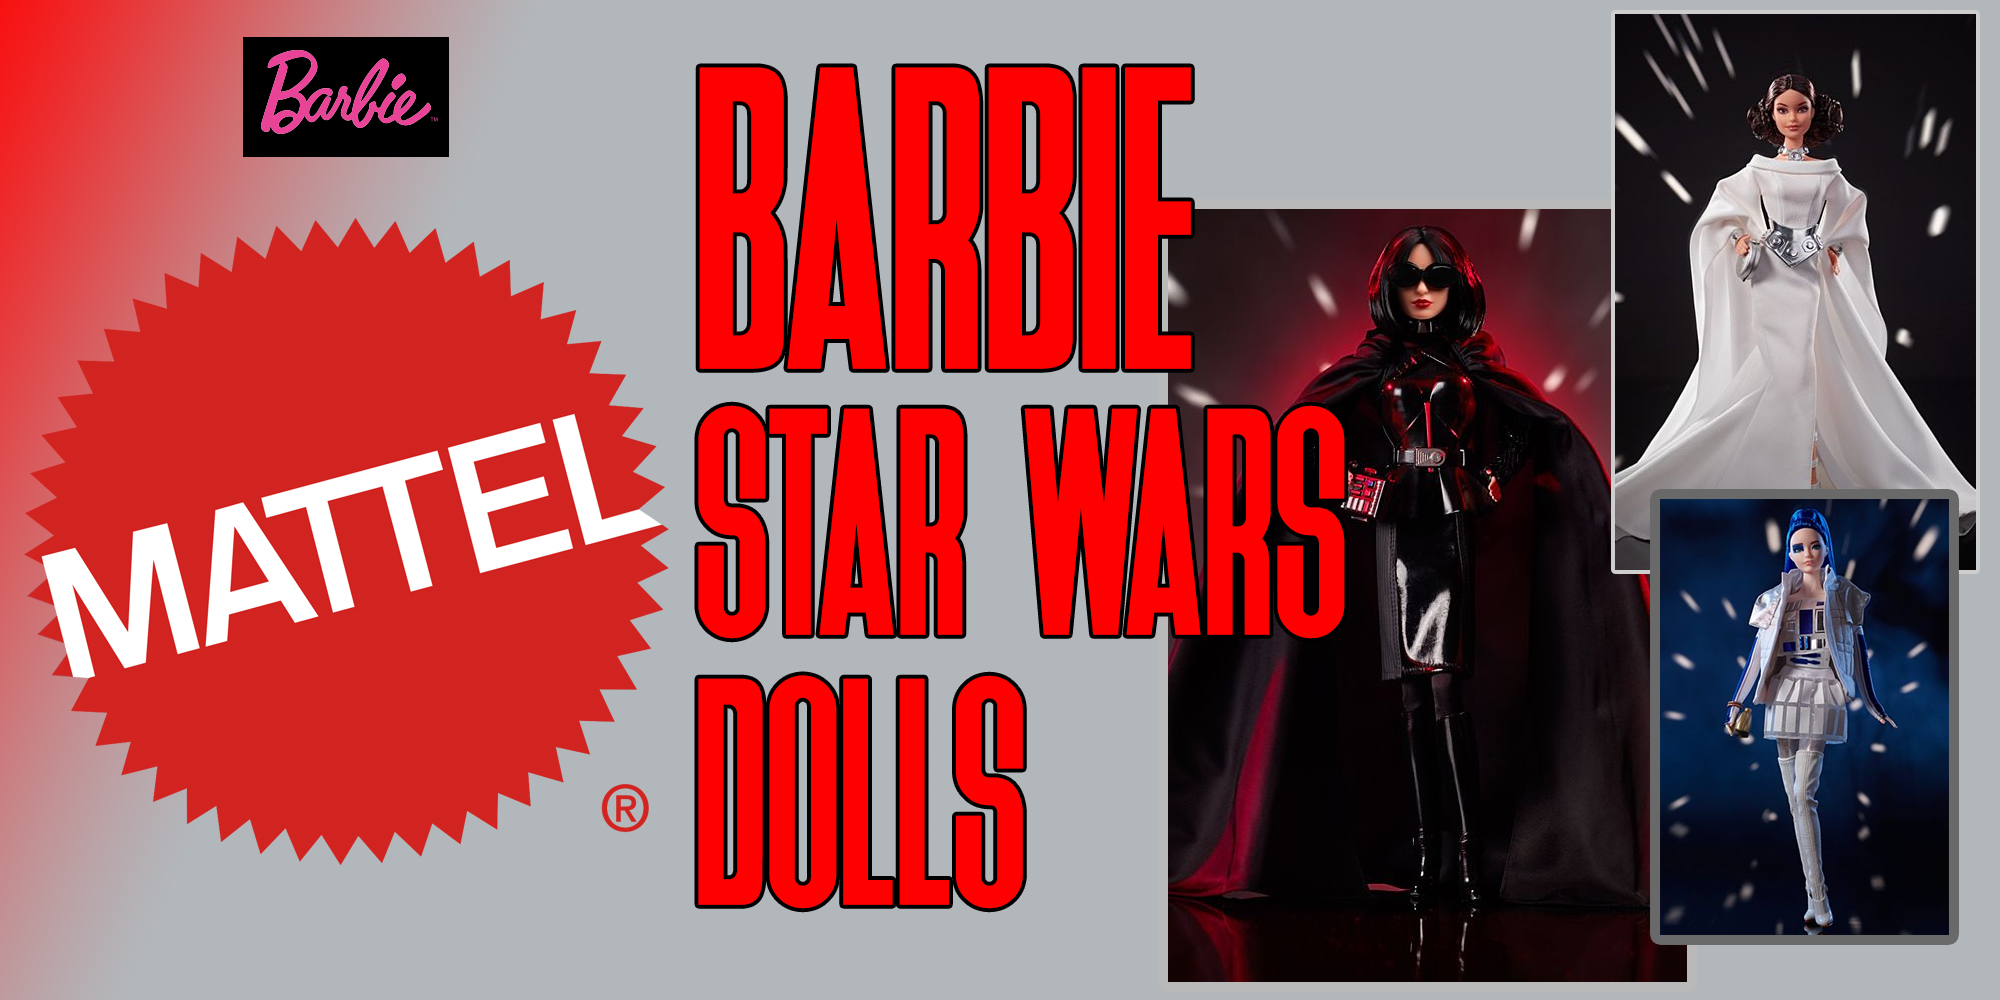 Star Wars Goes Barbie!